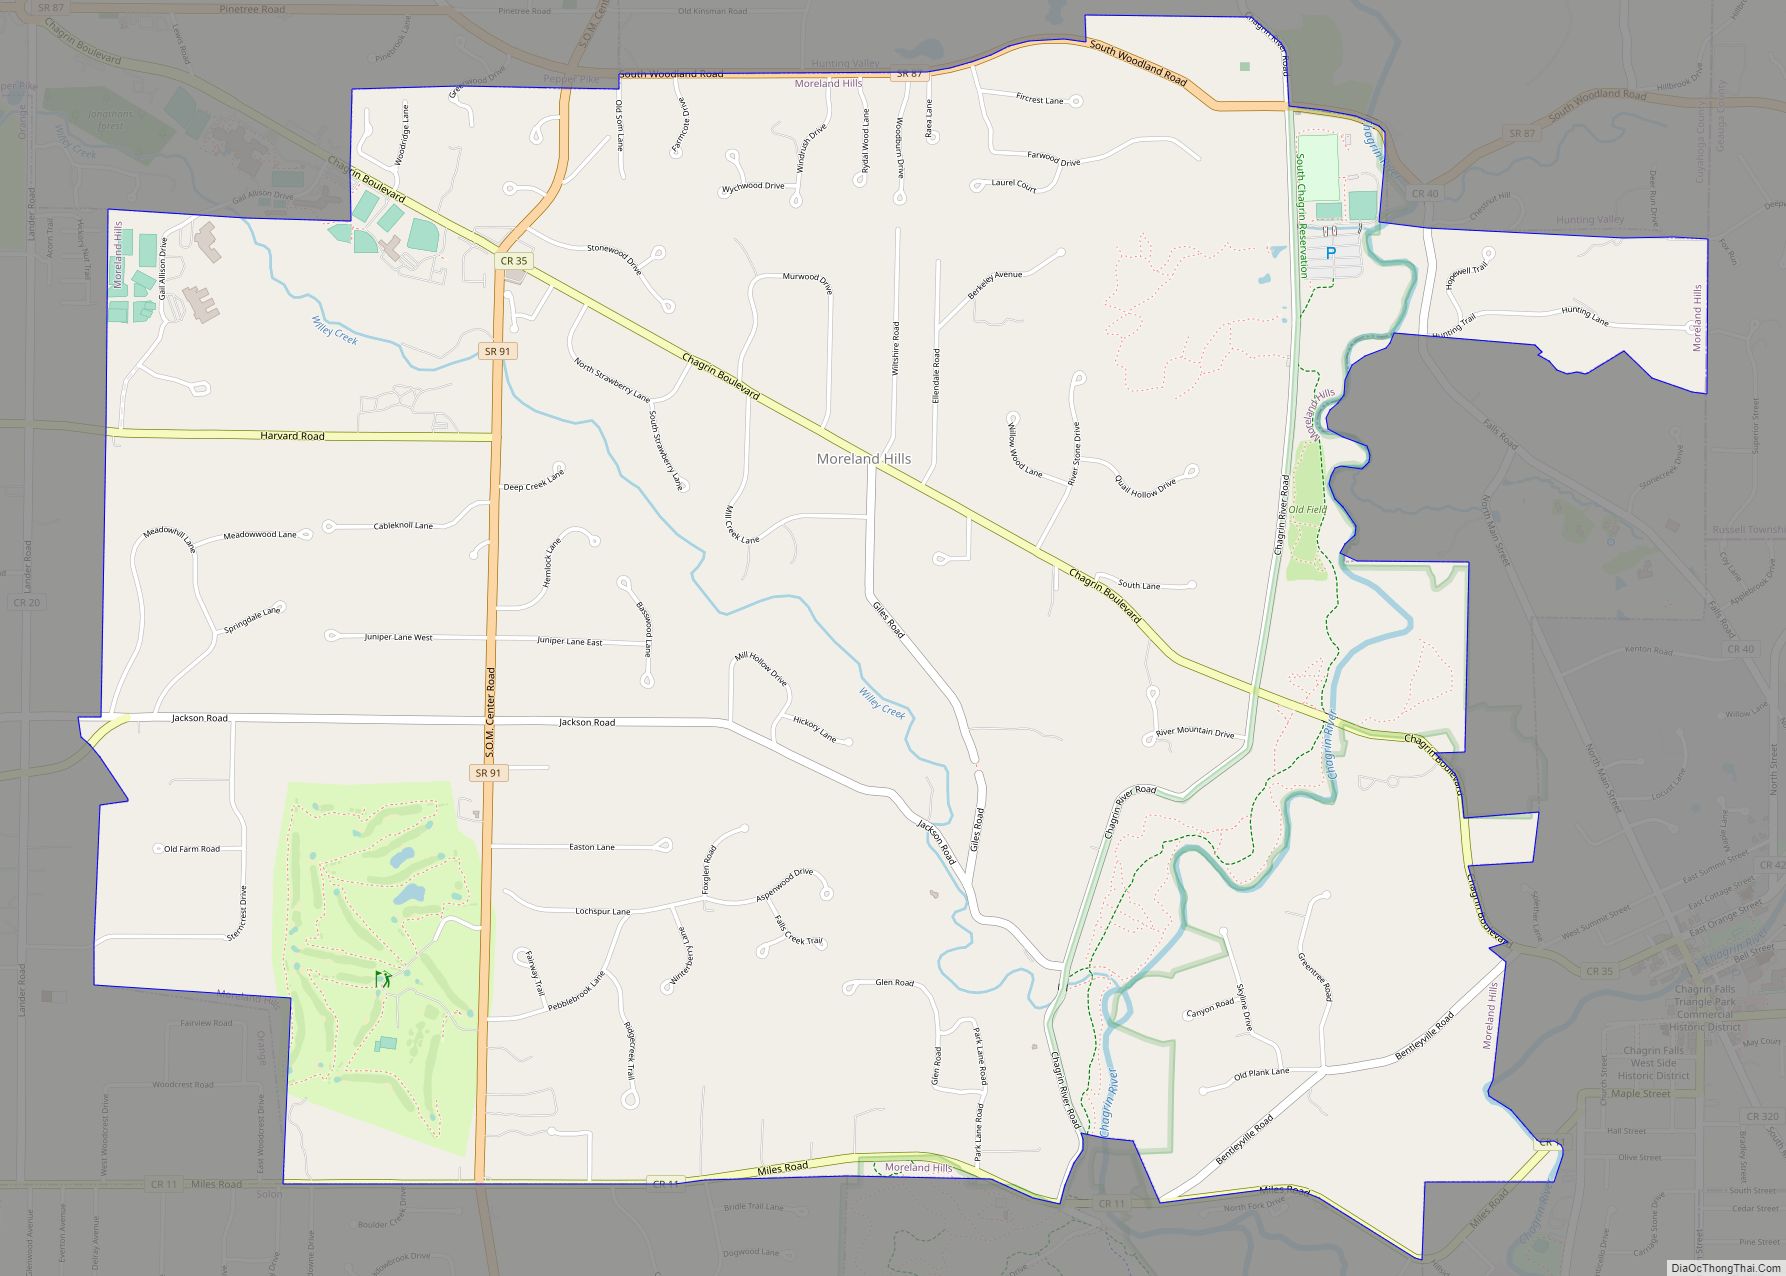 Map of Moreland Hills village